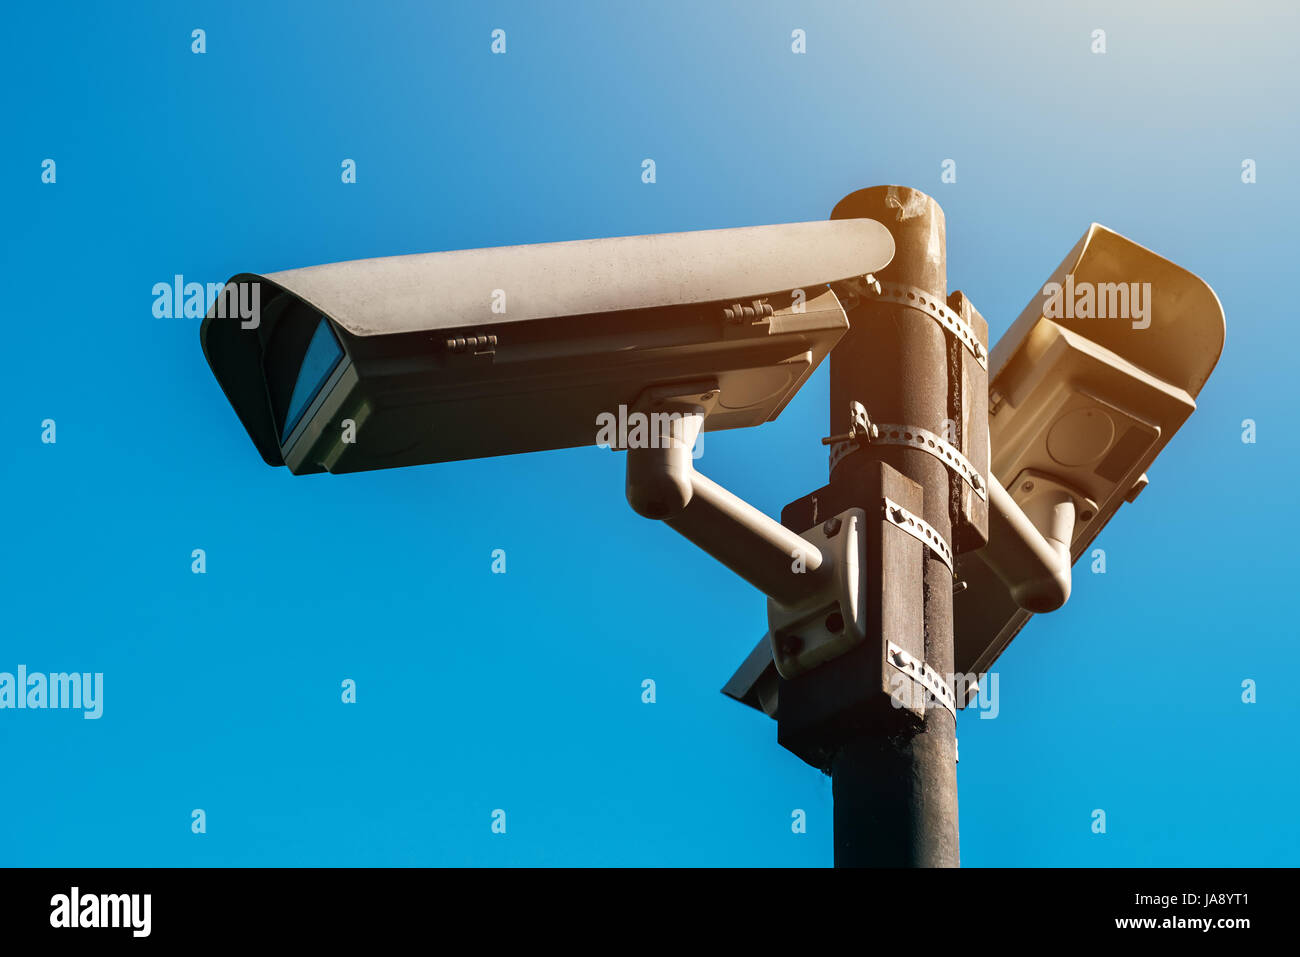 Caméra de surveillance, l'ère moderne de surveillance électronique anti-terroristes des caméras de sécurité contre le ciel bleu qui symbolise la liberté Banque D'Images